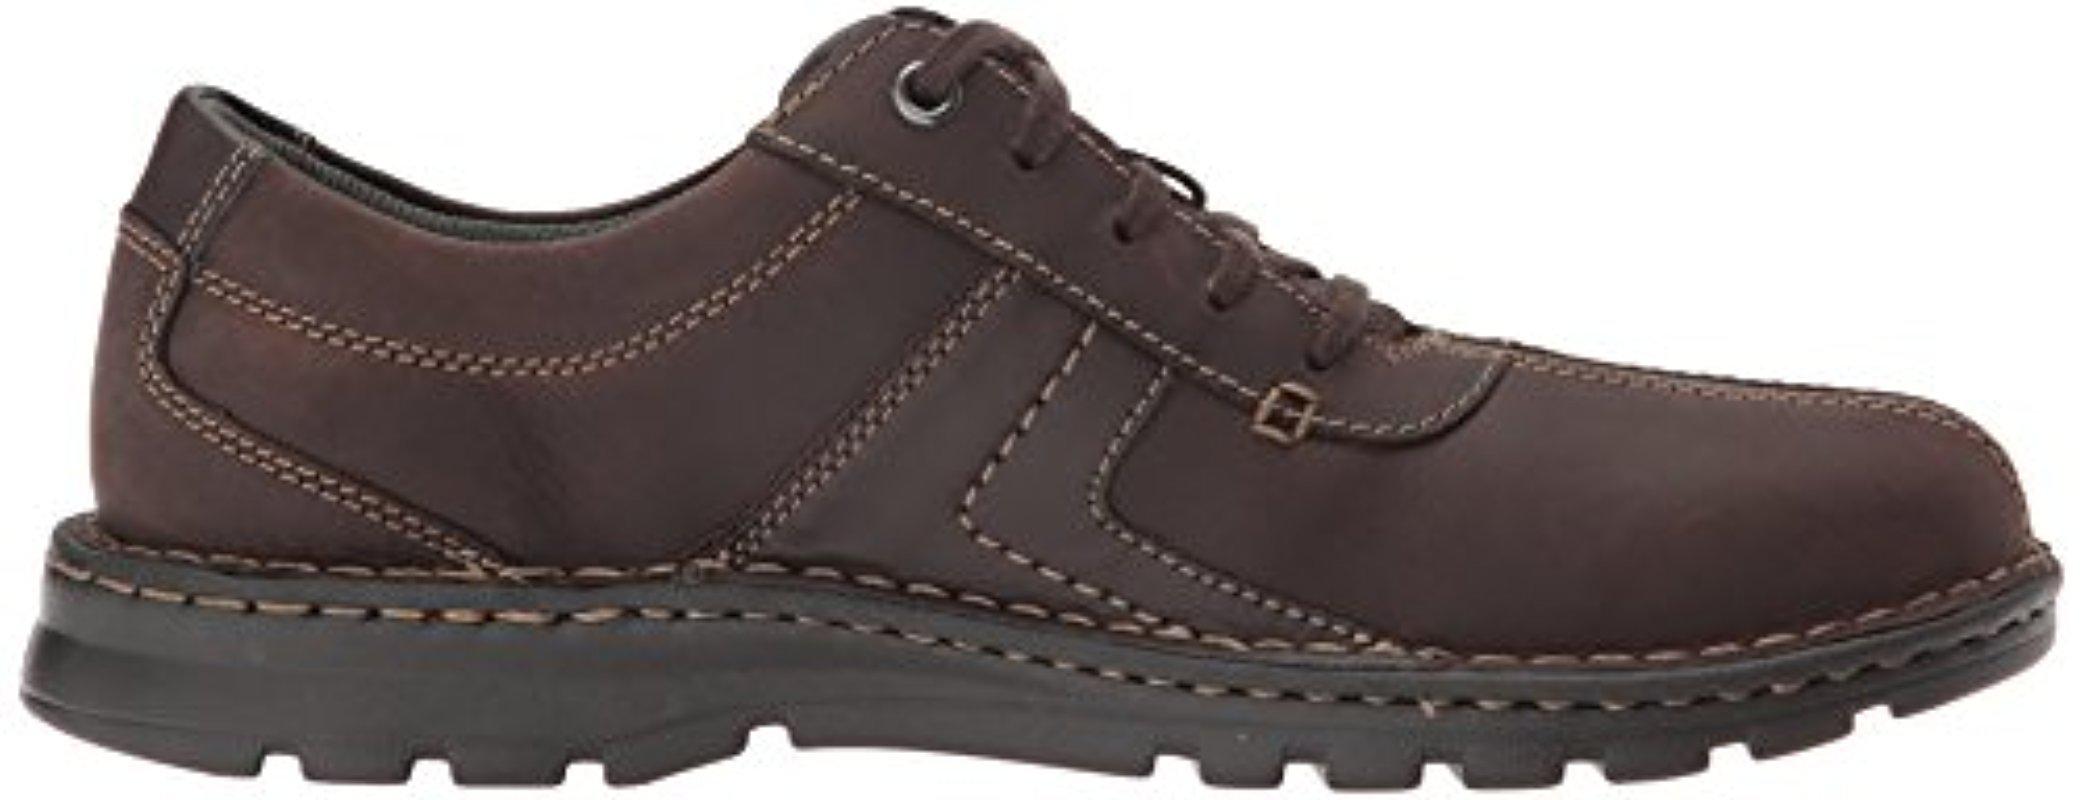 Vanek Walk Loafer in Dark Brown Leather 